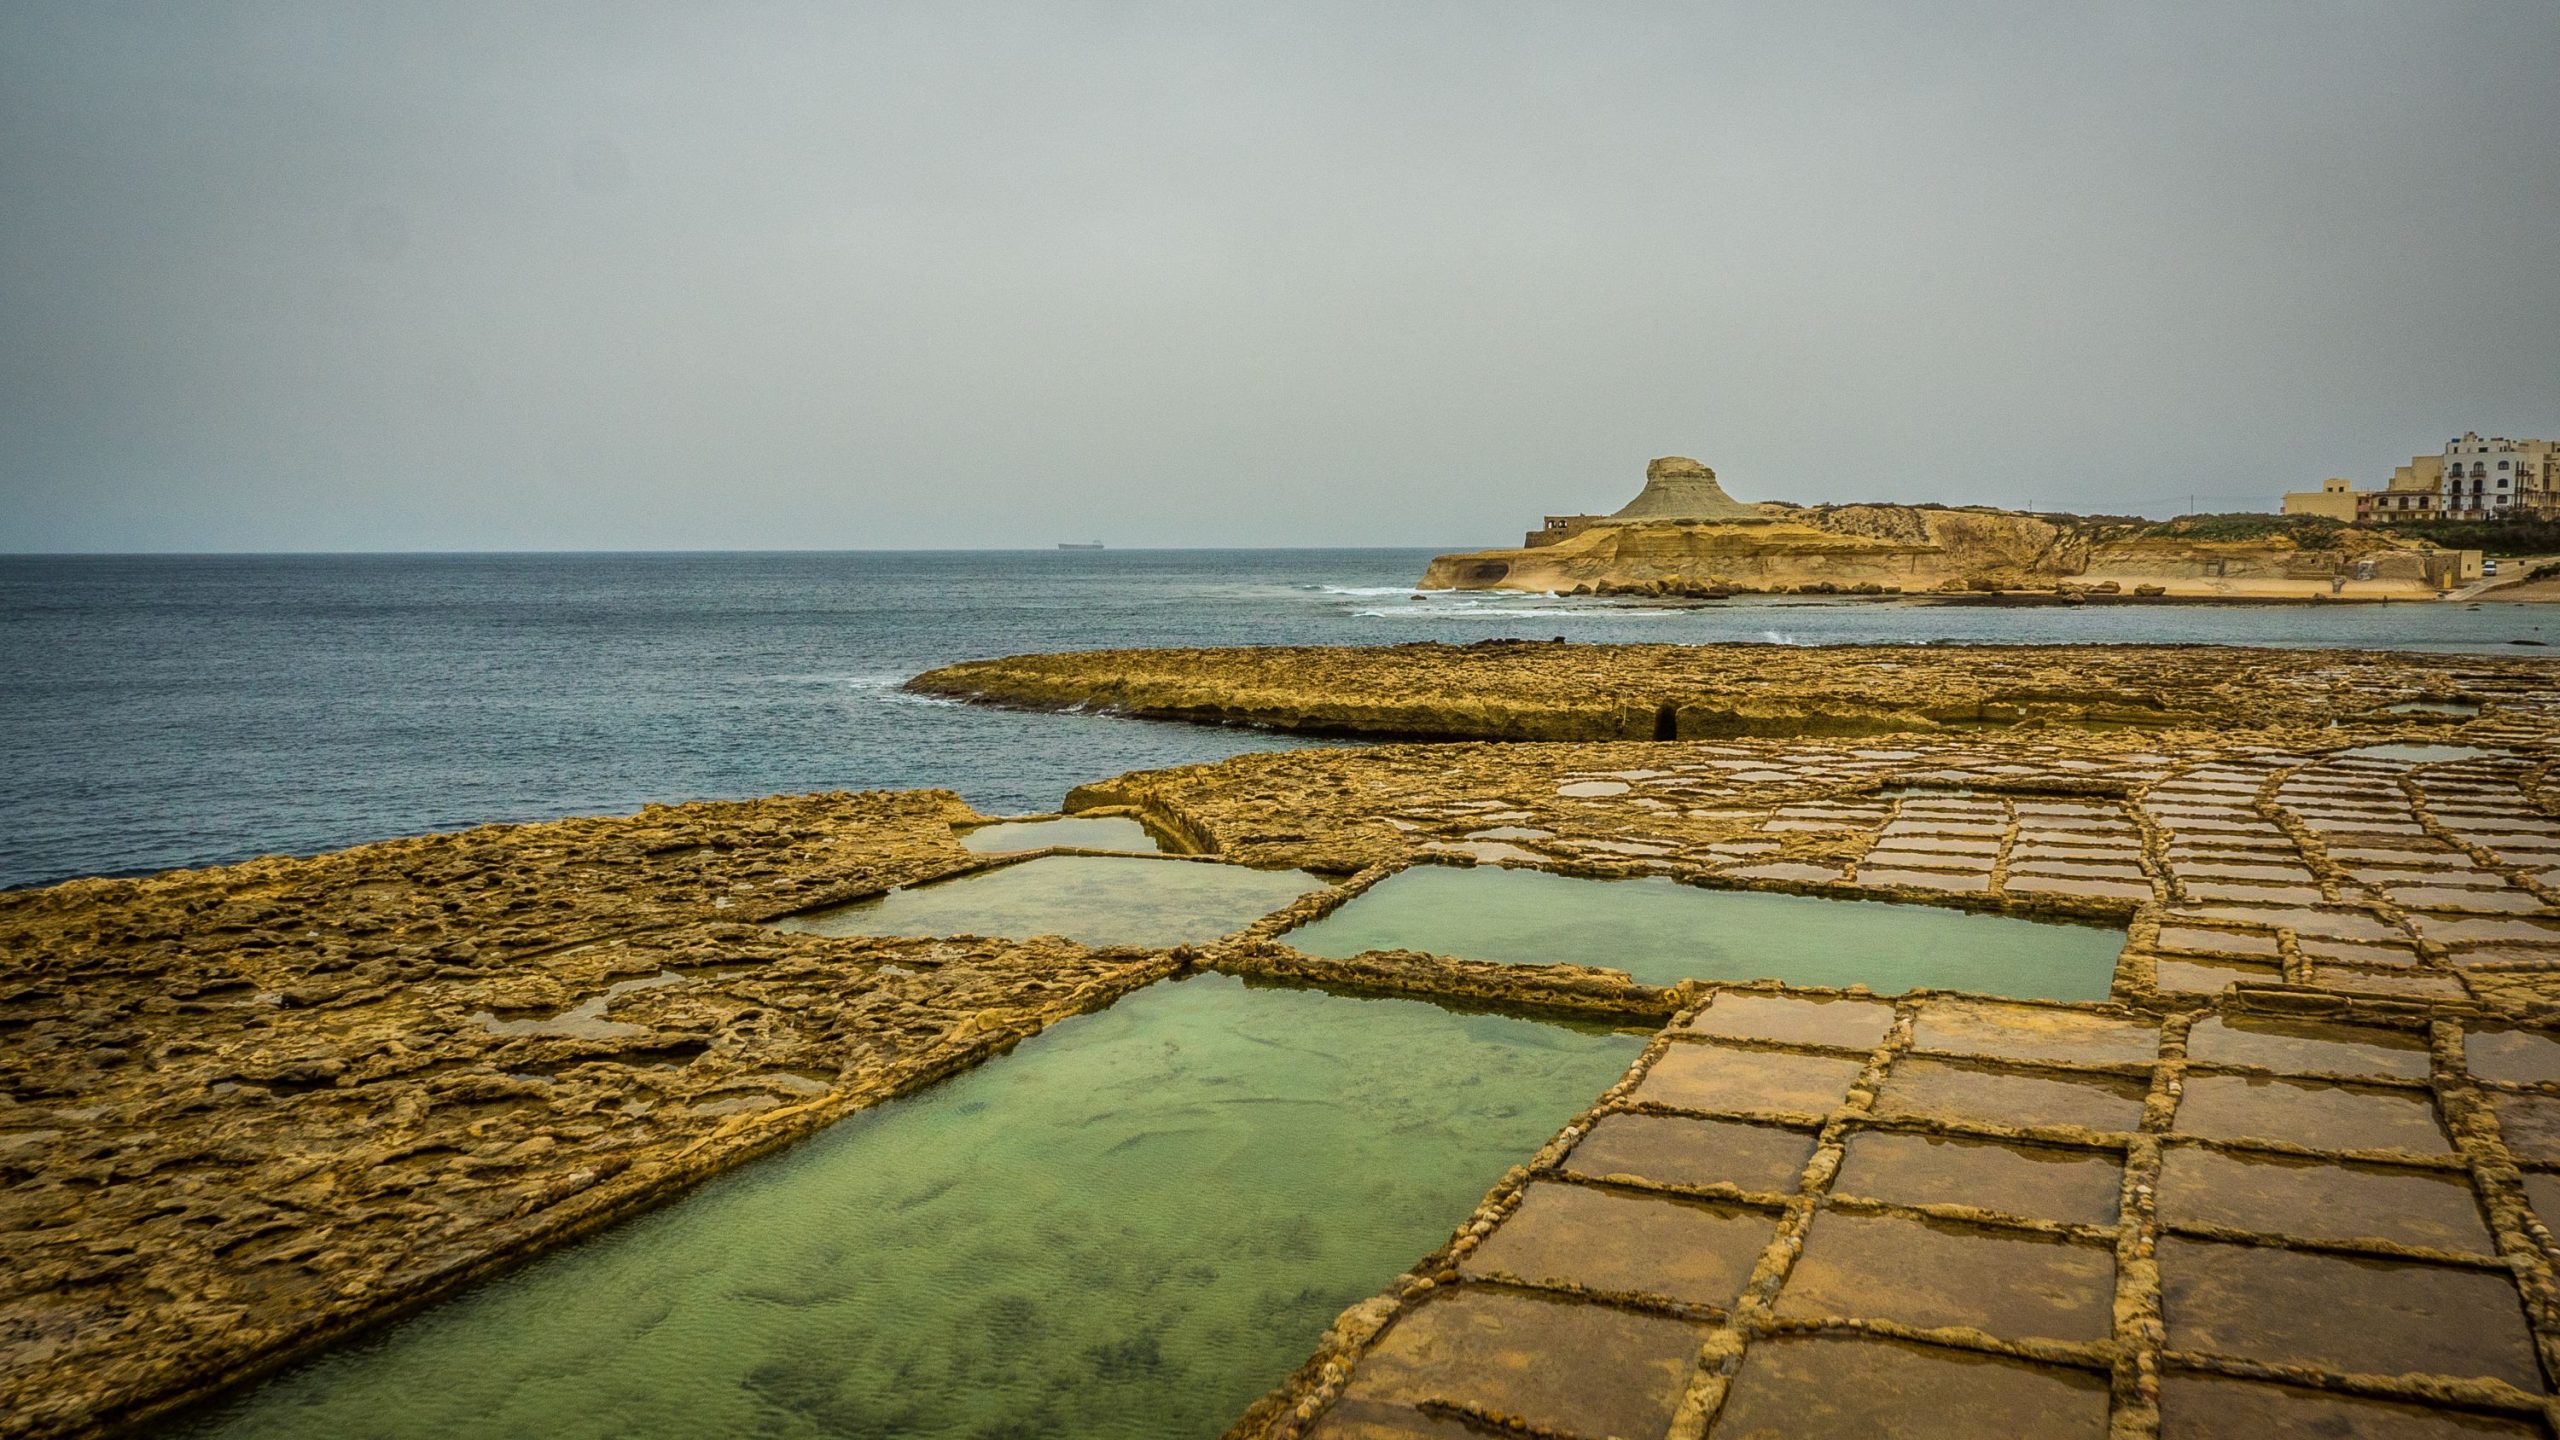 Jegyespárok, kulináris kalandorok és történelembúvárok: Gozo, Málta testvérszigete mindenkit vár, és neked is bakancslistára kell tűznöd